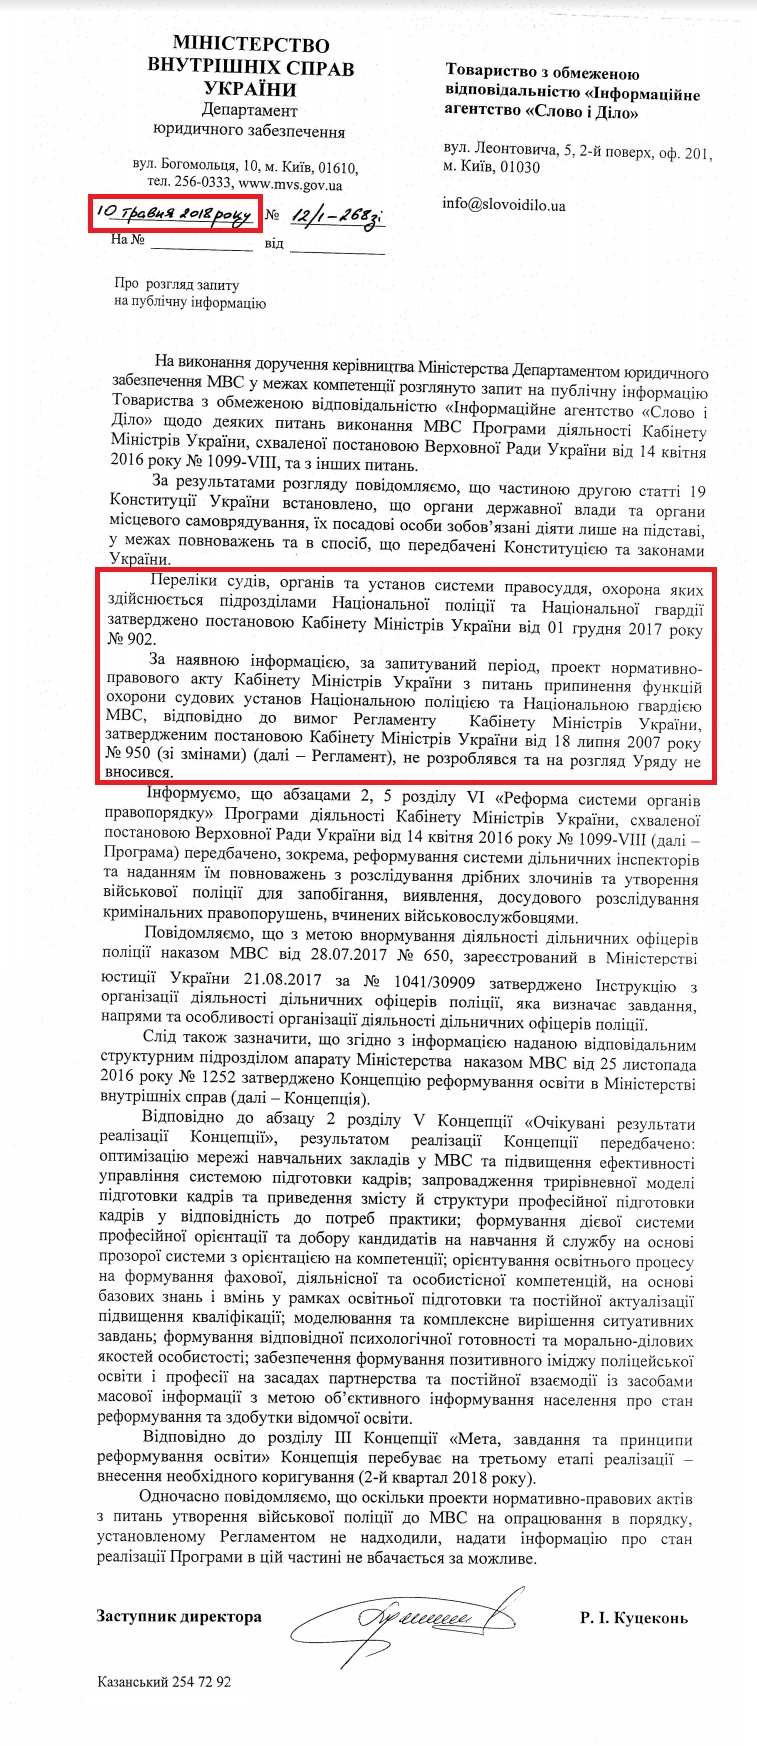 Лист Міністерства внутрішніх справ України від 10 травня 2018 року,